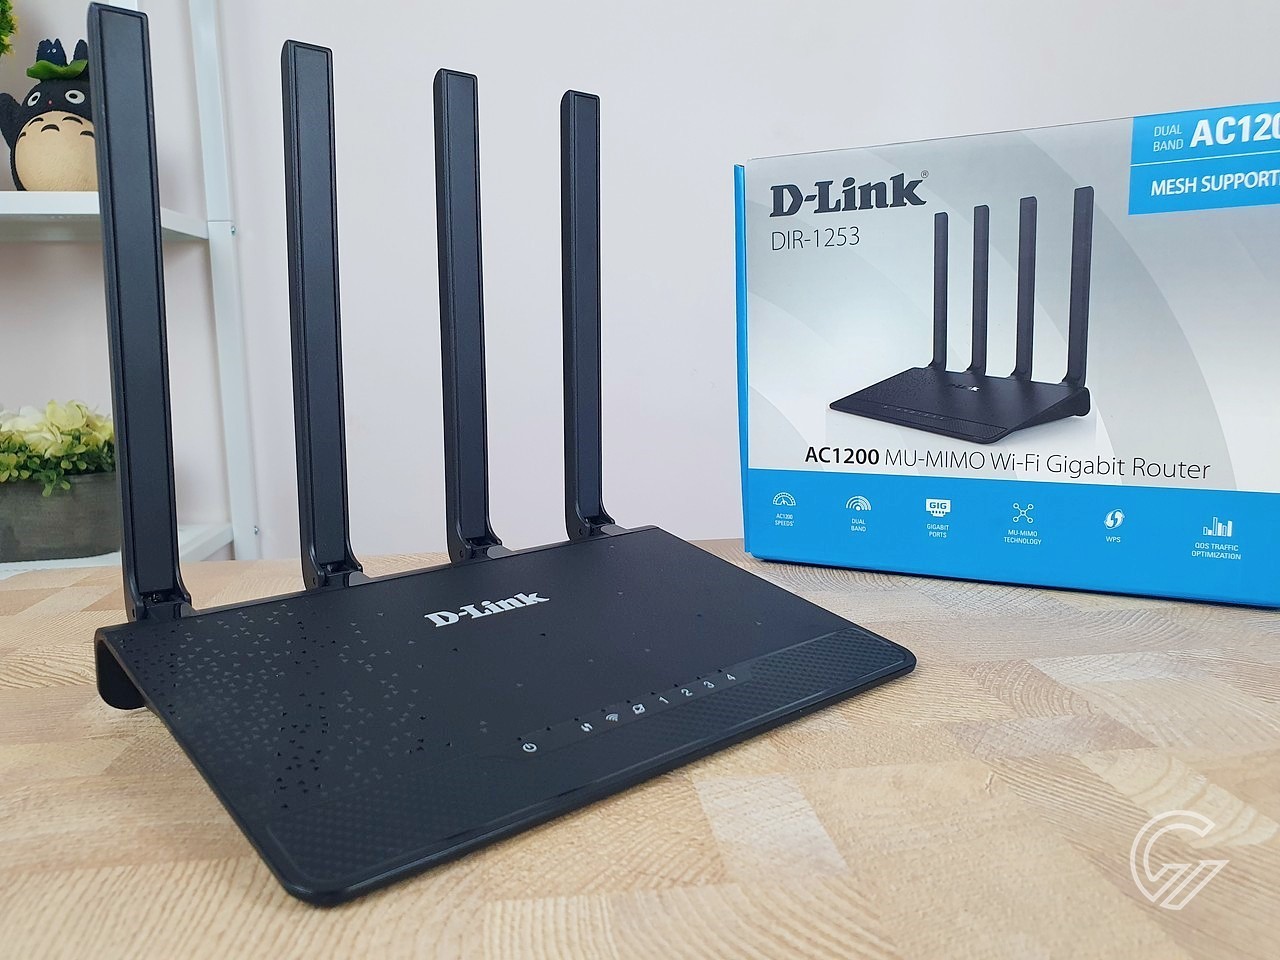 Review D-Link DIR-1253 AC1200 Wi-Fi Gigabit Router